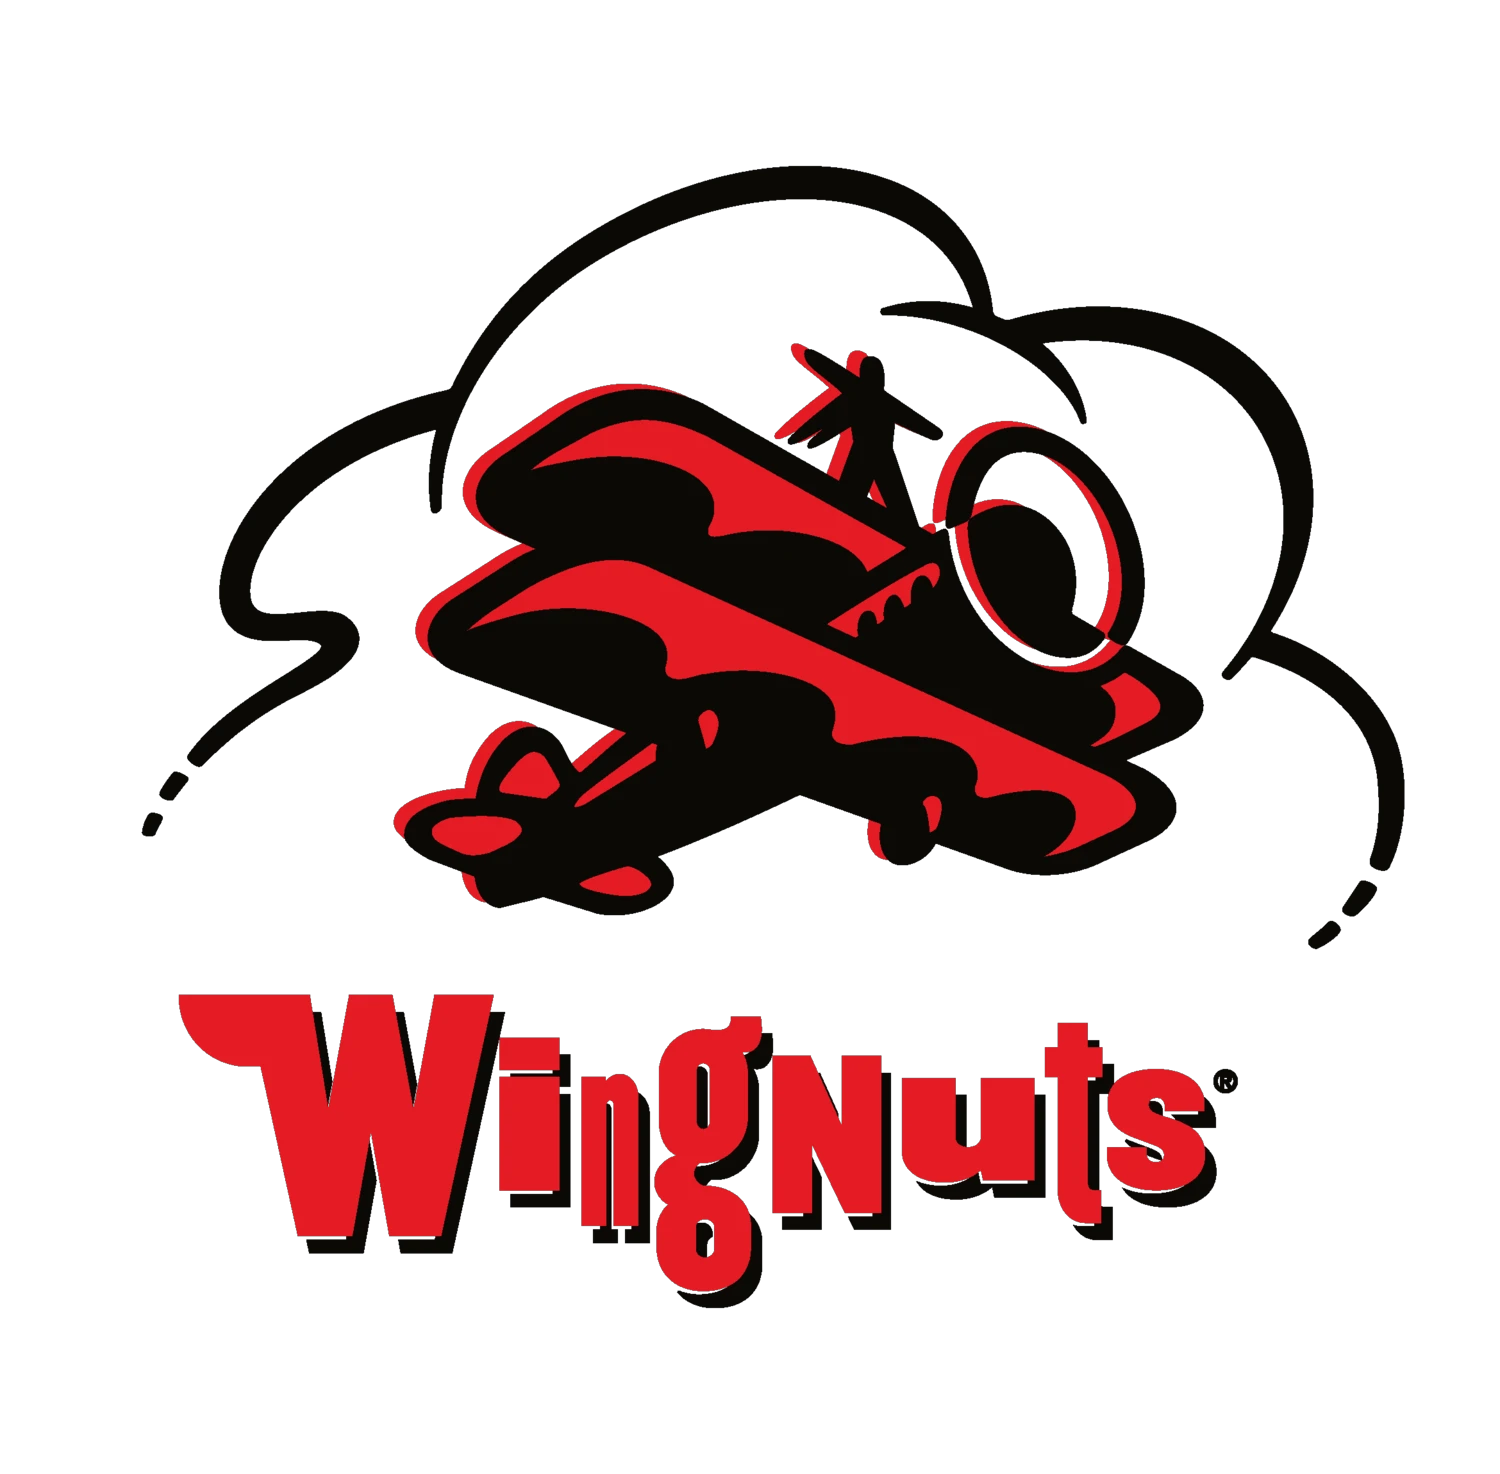 wingnuts.biz